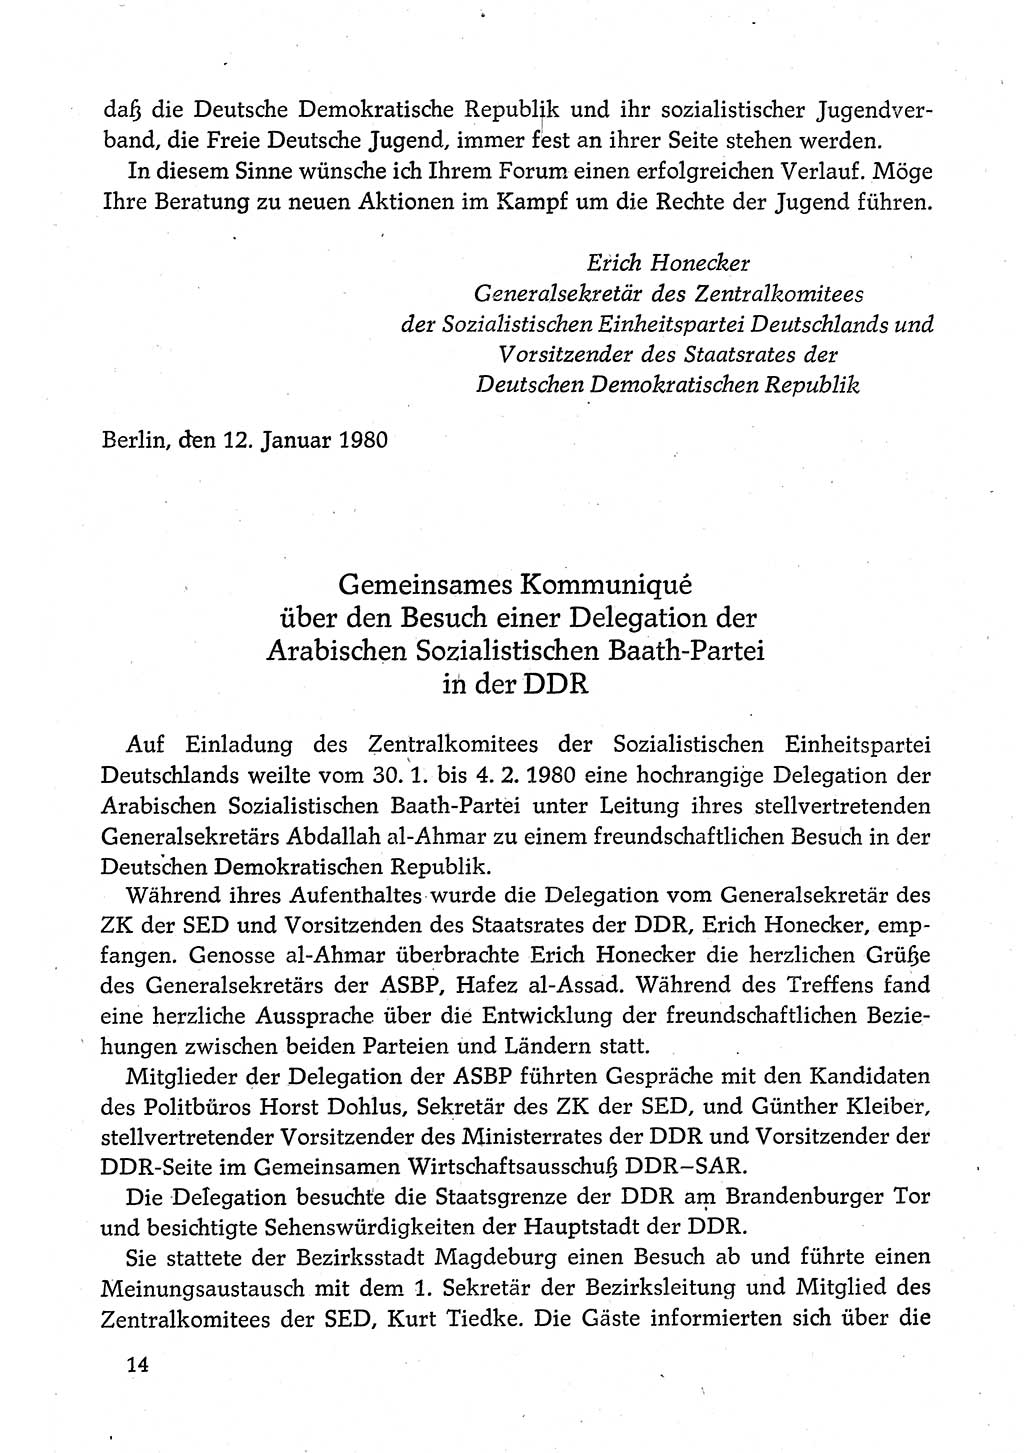 Dokumente der Sozialistischen Einheitspartei Deutschlands (SED) [Deutsche Demokratische Republik (DDR)] 1980-1981, Seite 14 (Dok. SED DDR 1980-1981, S. 14)